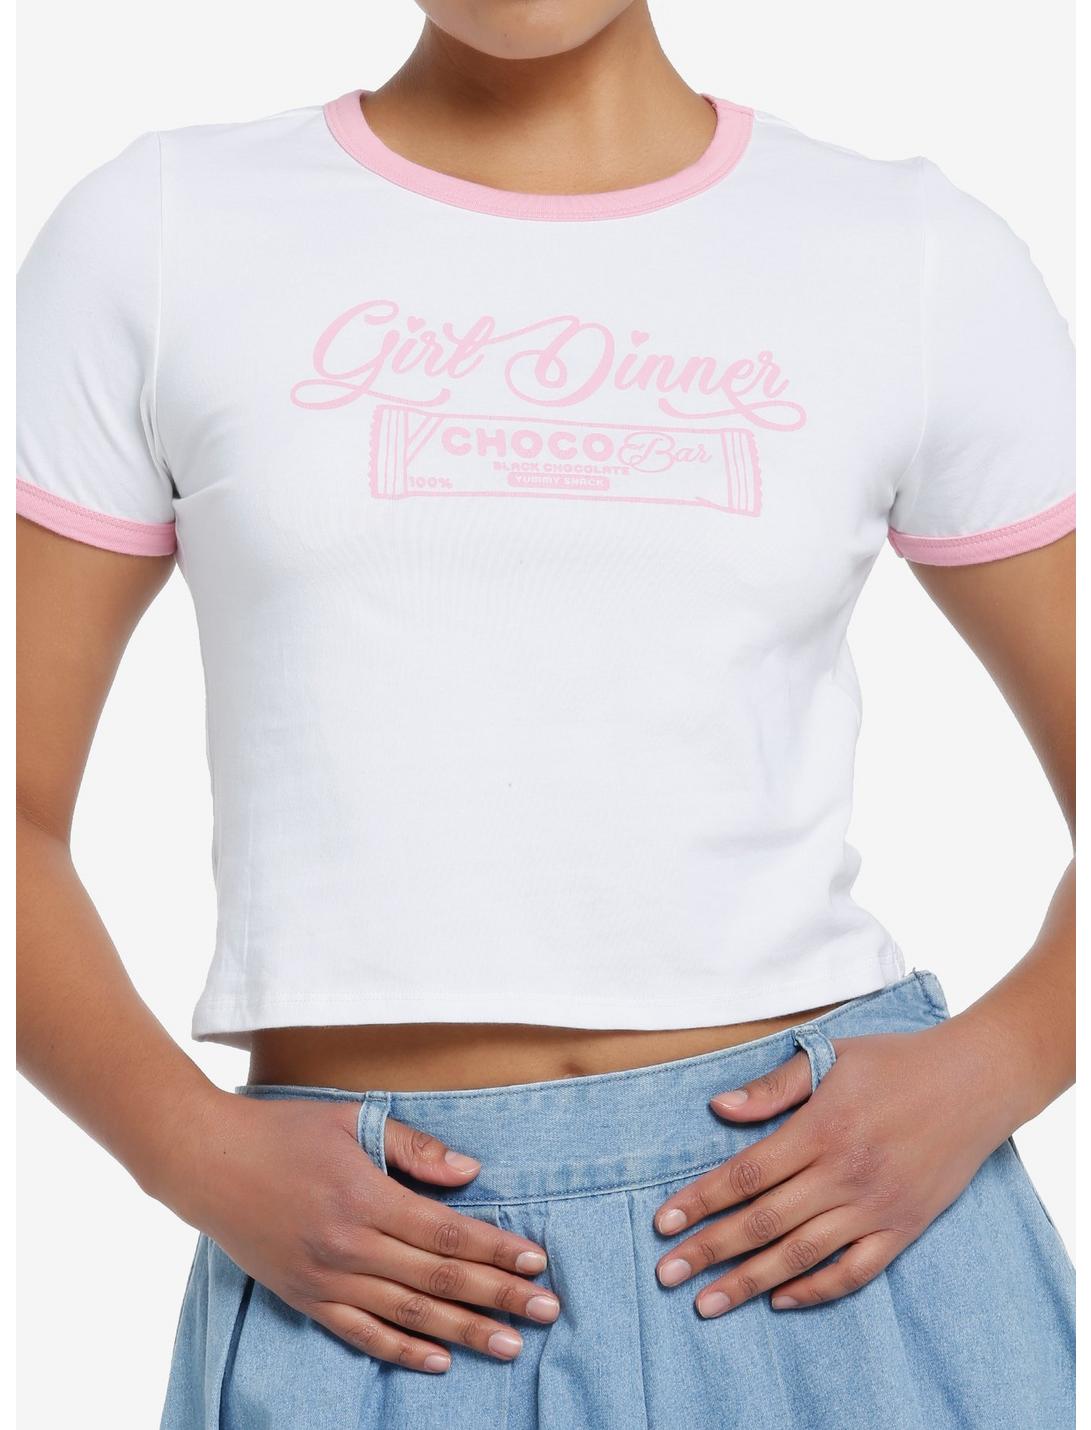 Girl Dinner Girls Ringer Baby T-Shirt, PINK, hi-res